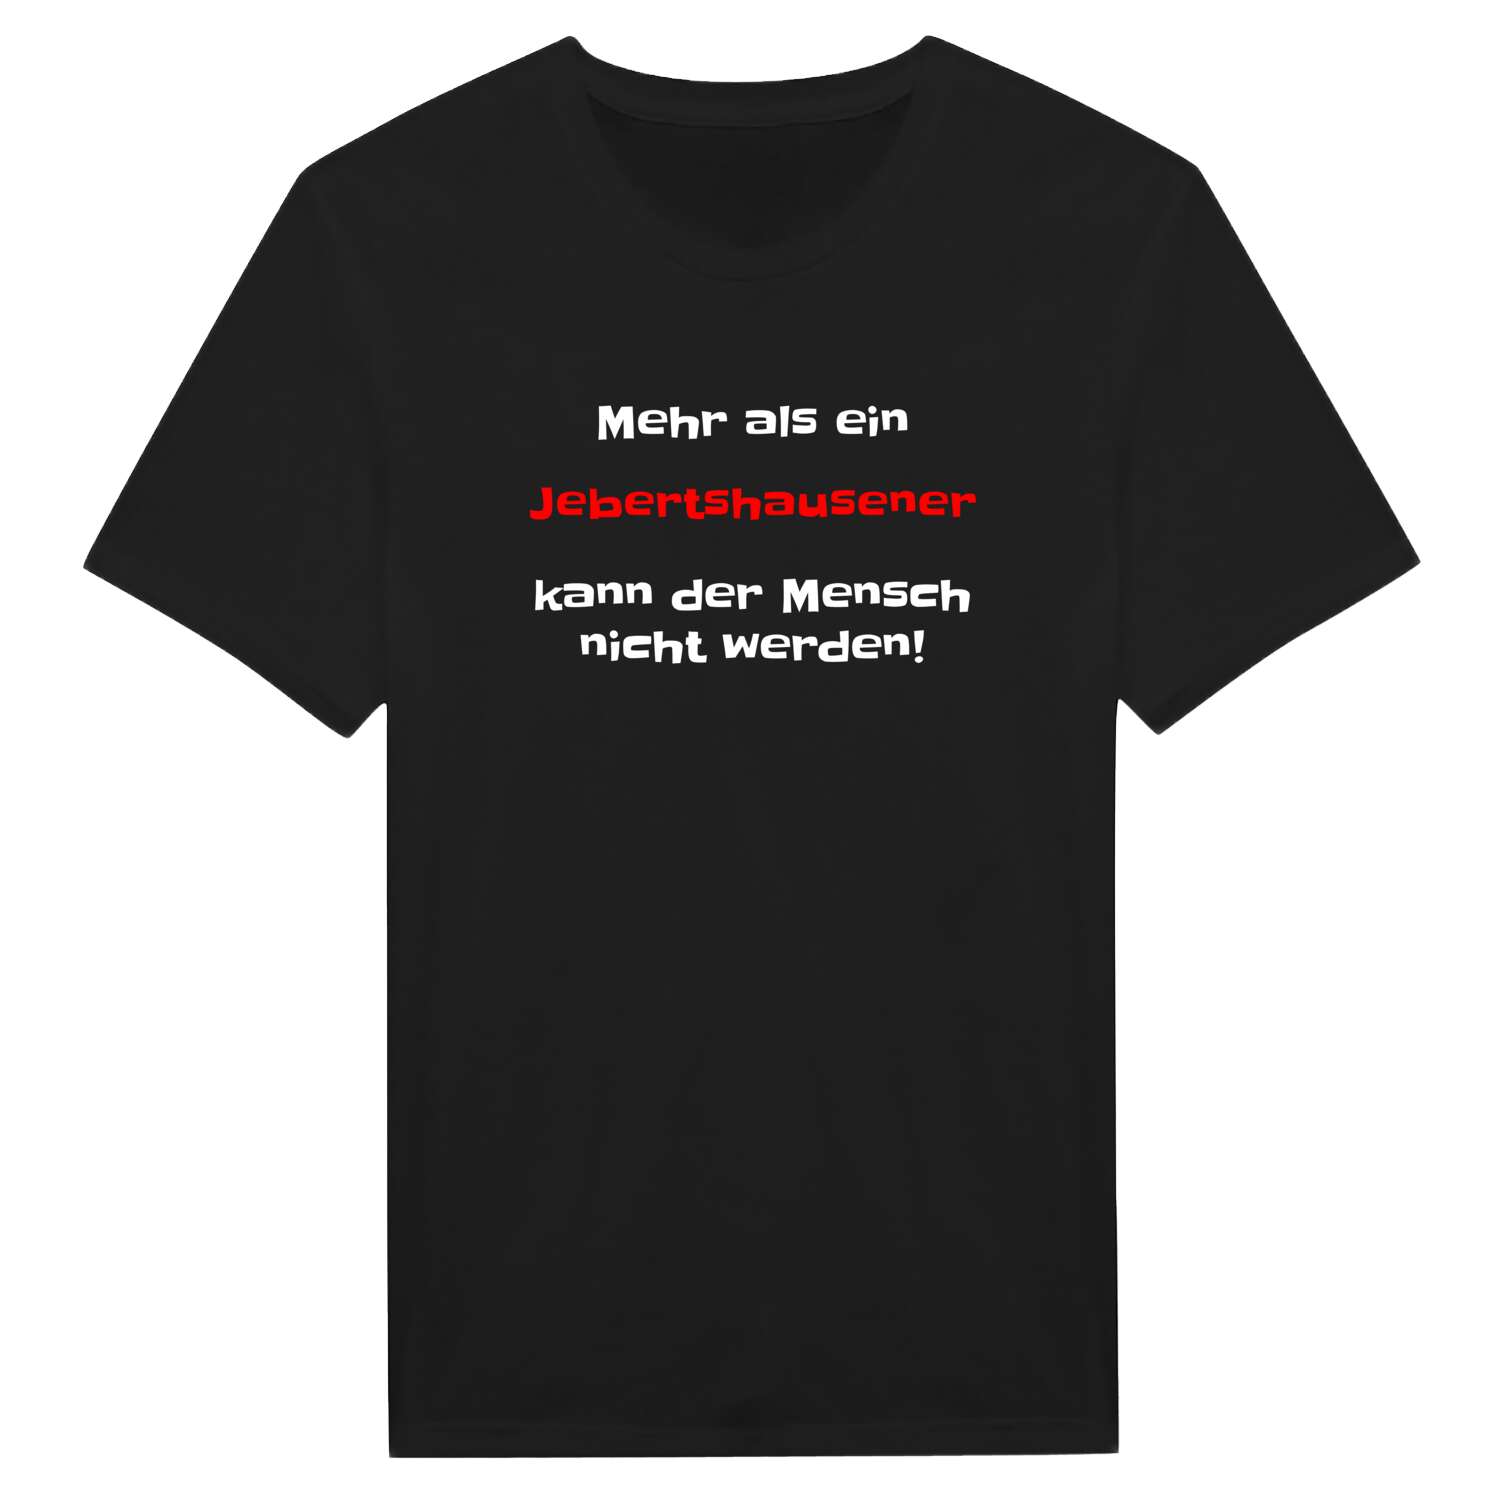 Jebertshausen T-Shirt »Mehr als ein«